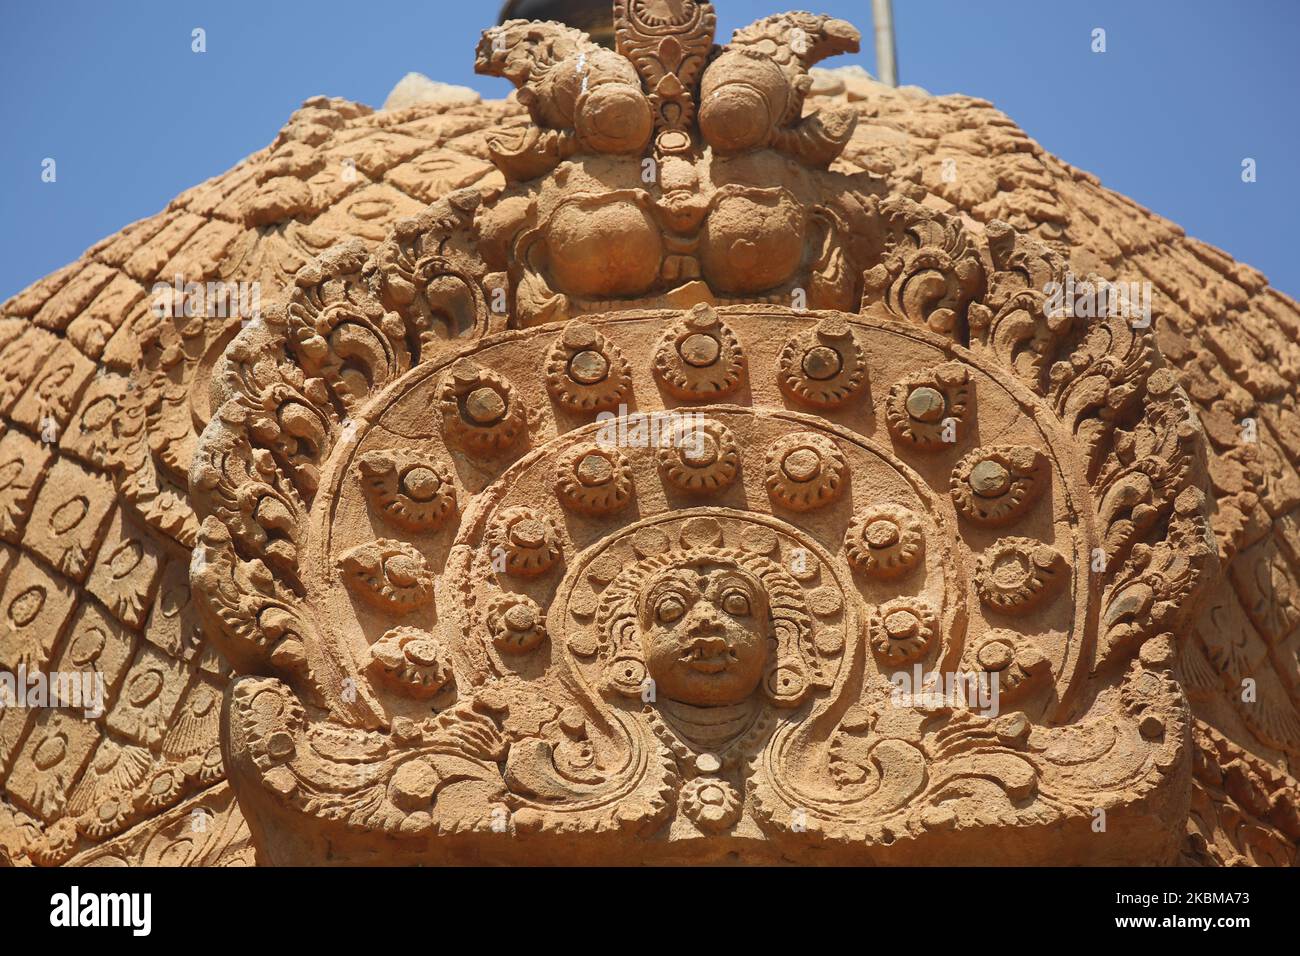 Le sculture adornano il tempiale di Brihadeeswarar (anche conosciuto come tempiale di Brihadisvara, tempiale grande, tempiale di Rajaeswara, tempiale di Rajarajeswaram e tempiale di Peruvudayar) è un tempiale indù dedicato al Signore Shiva situato in Thanjavur, Tamil Nadu, India. Il tempio è uno dei più grandi templi in India ed è un esempio di architettura Dravidiana costruita durante il periodo Chola da Raja Raja Chola i e completata nel 1010 CE. Il tempio ha più di 1000 anni ed è parte del patrimonio dell'umanità dell'UNESCO, conosciuto come il "Grande Tempio vivente di Chola", che comprende il Tempio Brihadeeswarar, Gangaikond Foto Stock